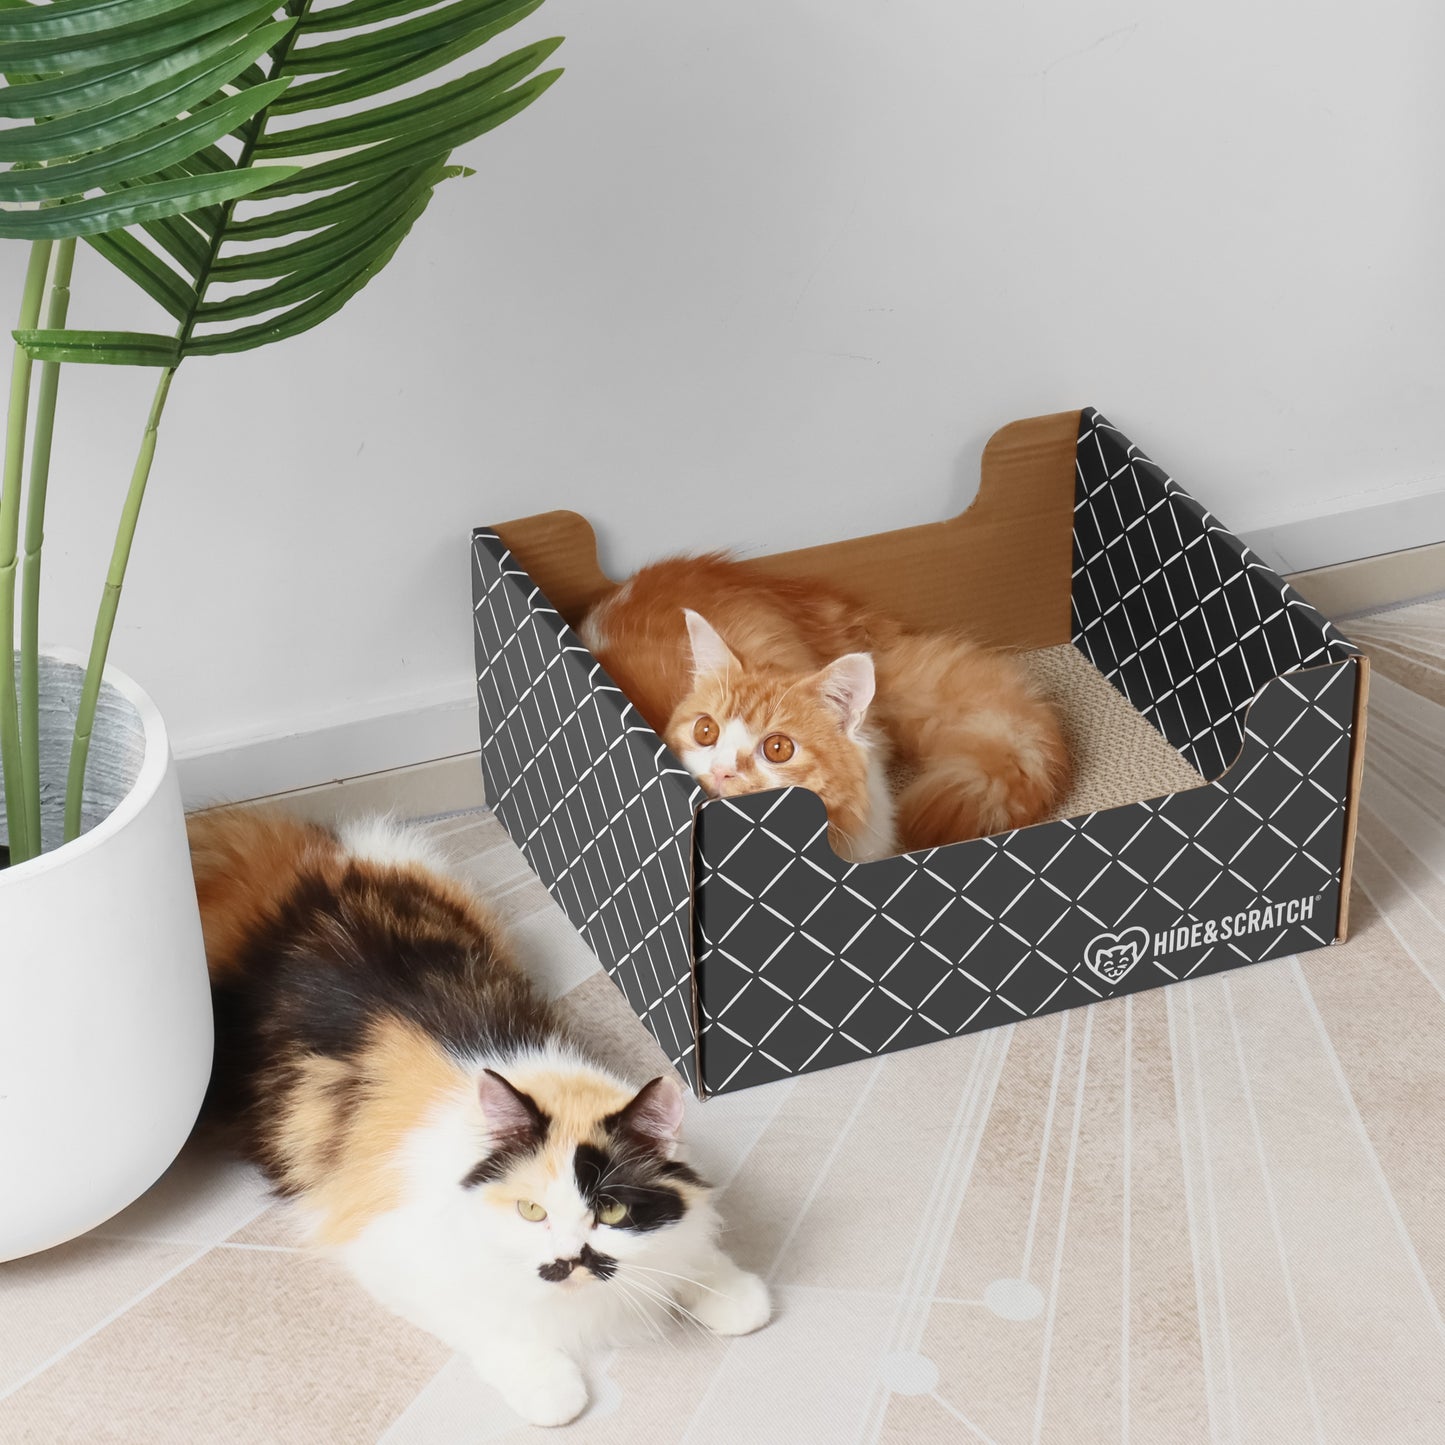 Hide & Scratch Extra-Large Cat Scratcher Box